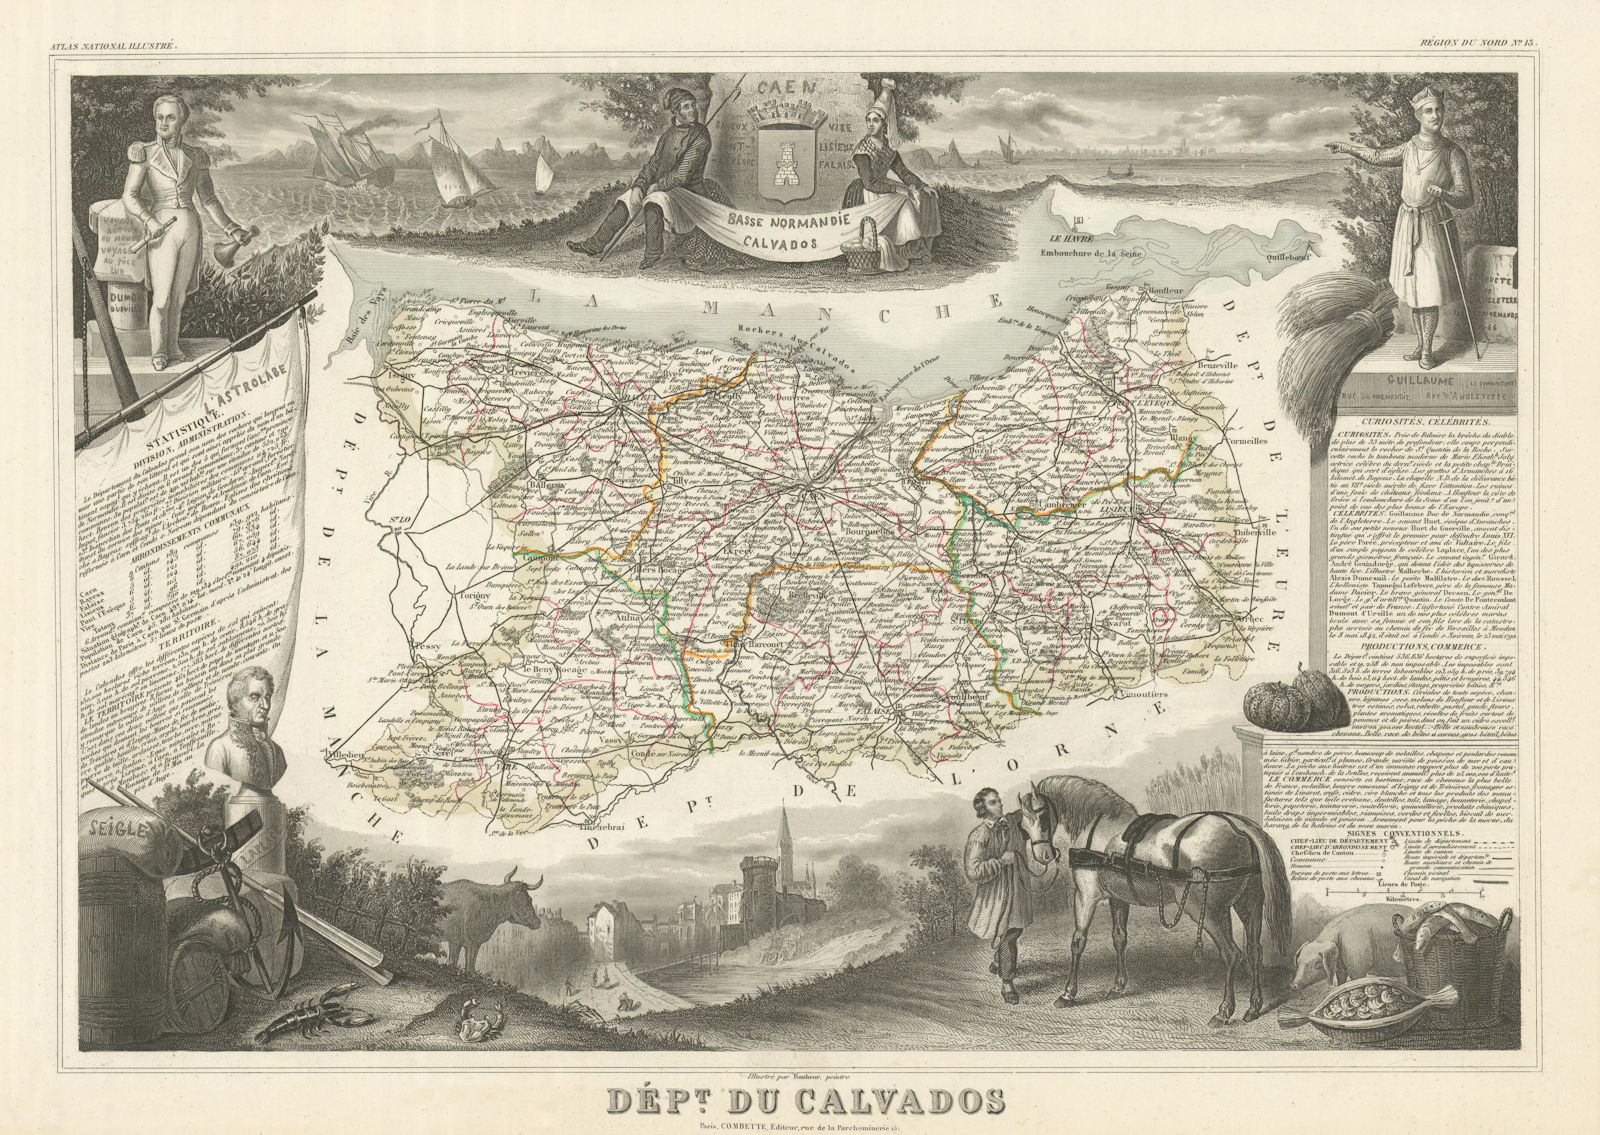 Associate Product Département du CALVADOS. Decorative antique map/carte by Victor LEVASSEUR 1856